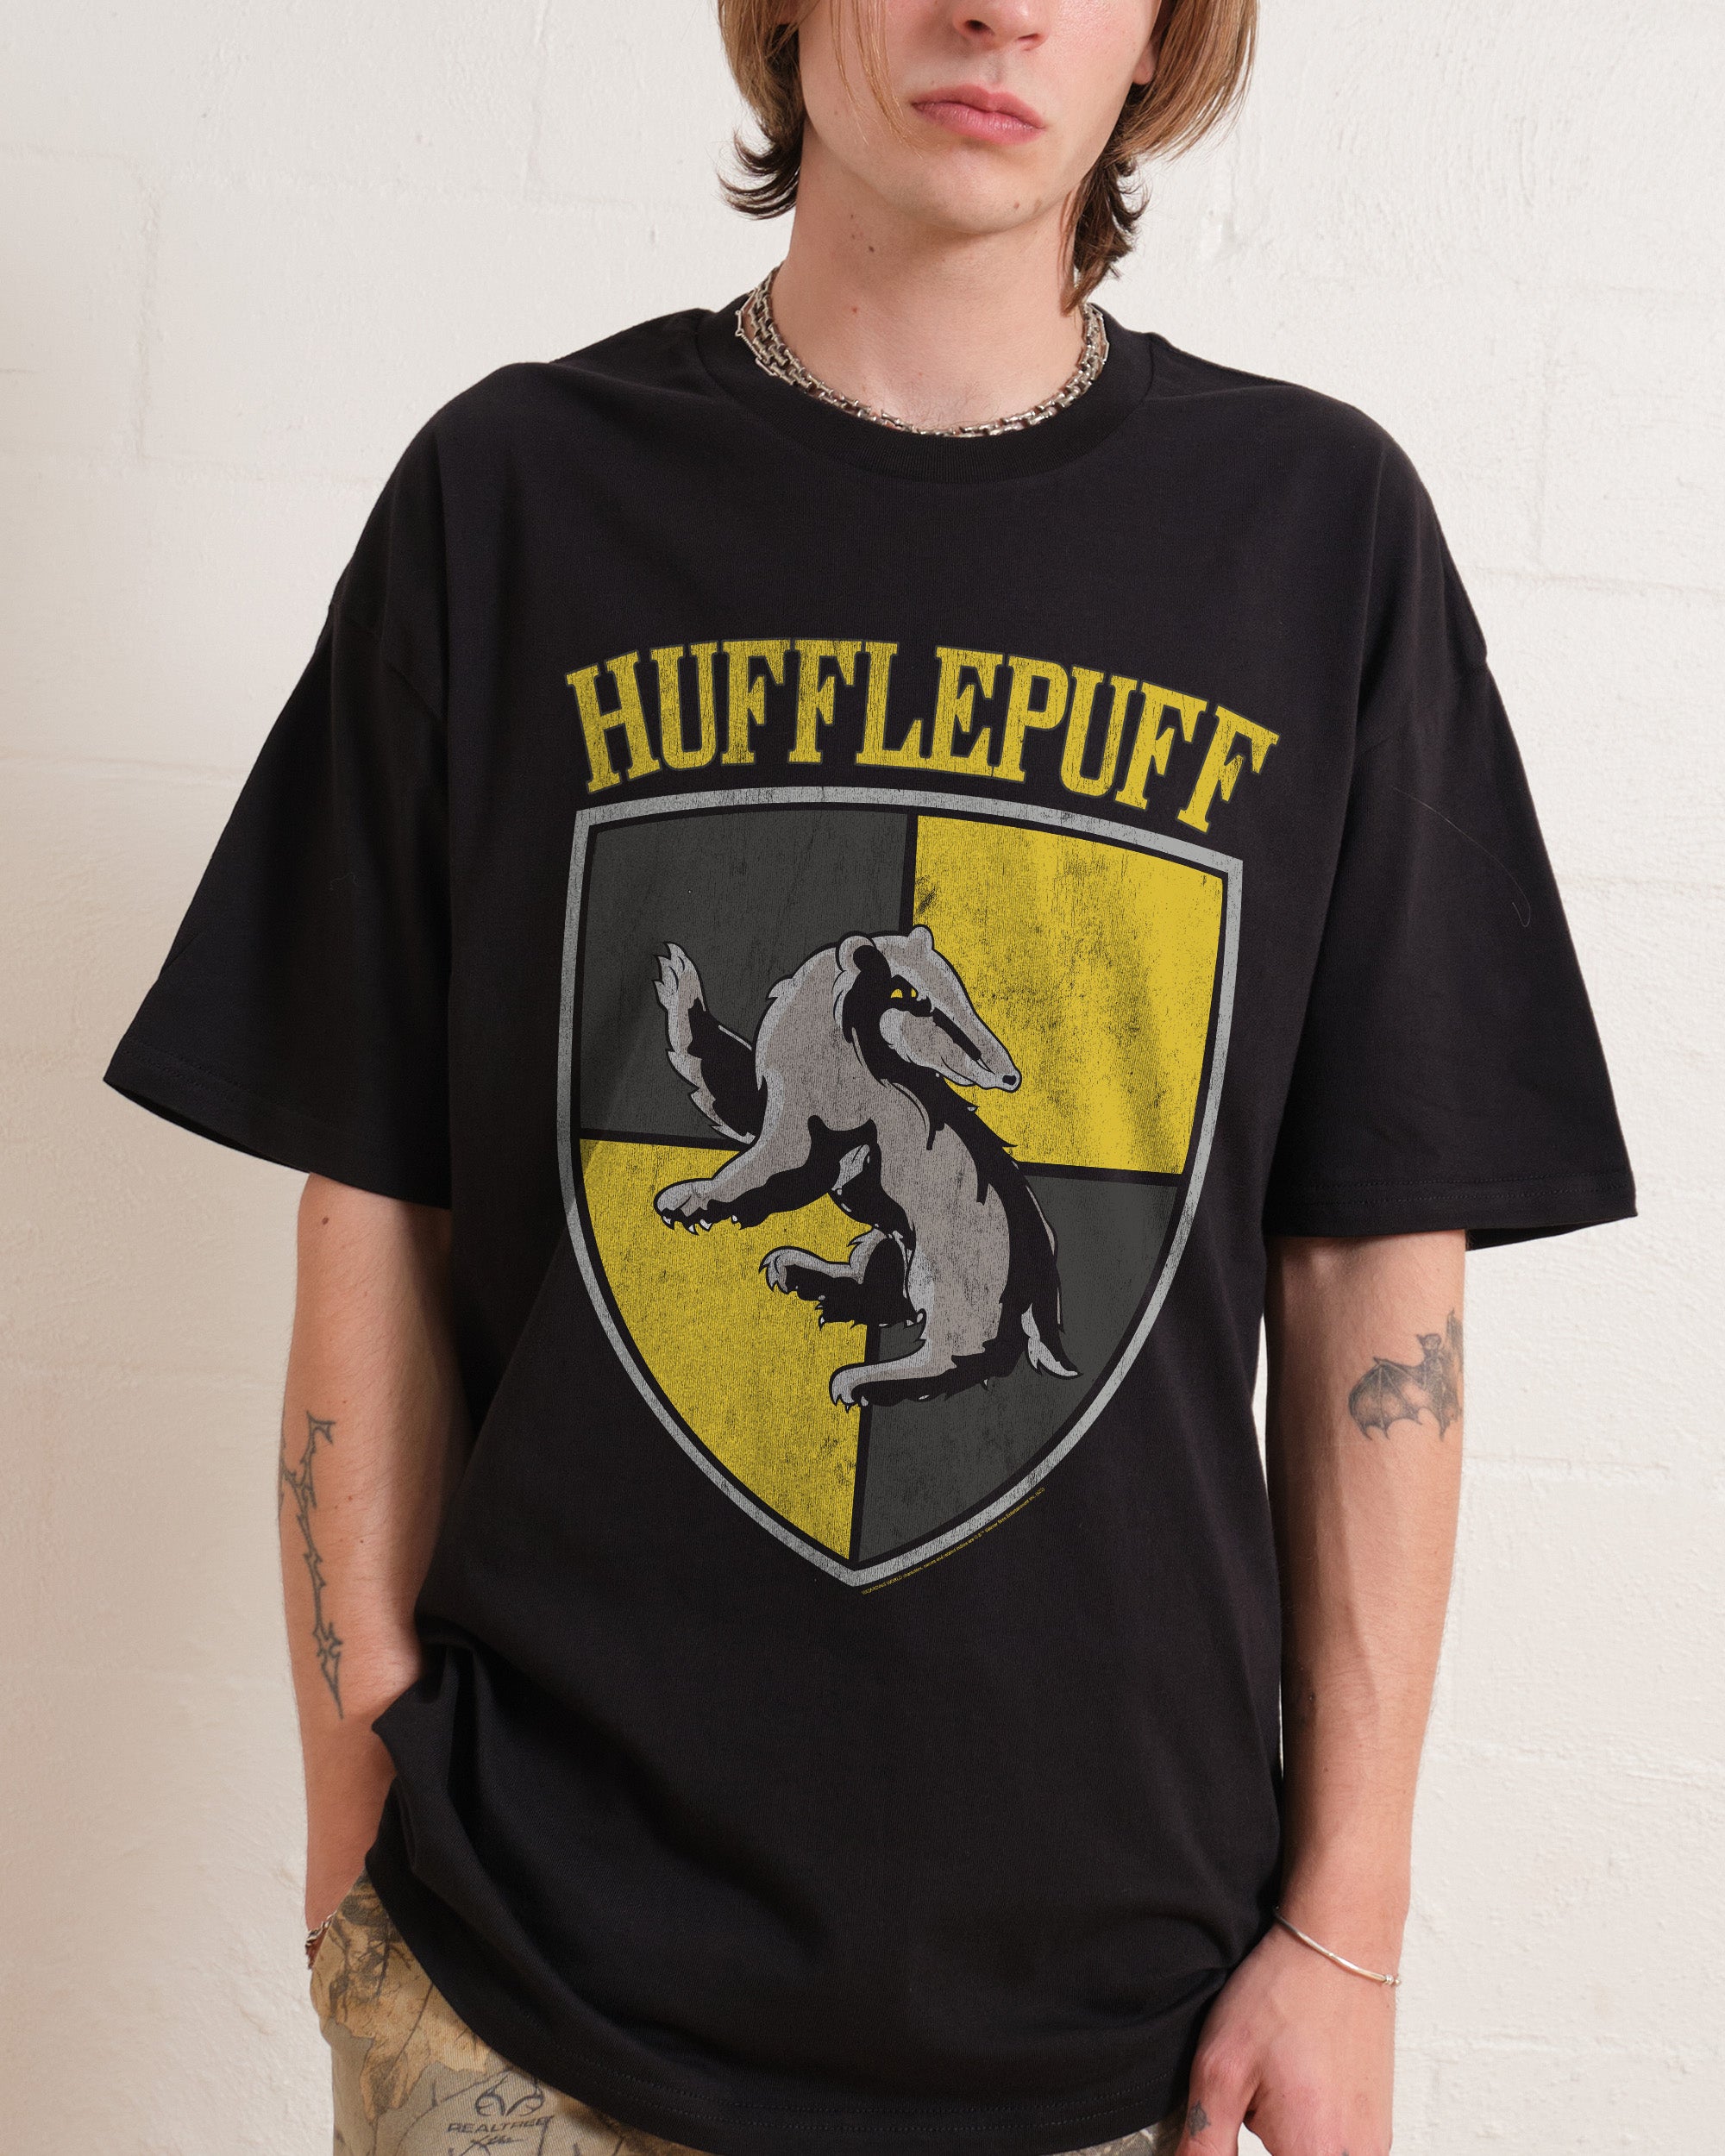 Hufflepuff Crest T-Shirt